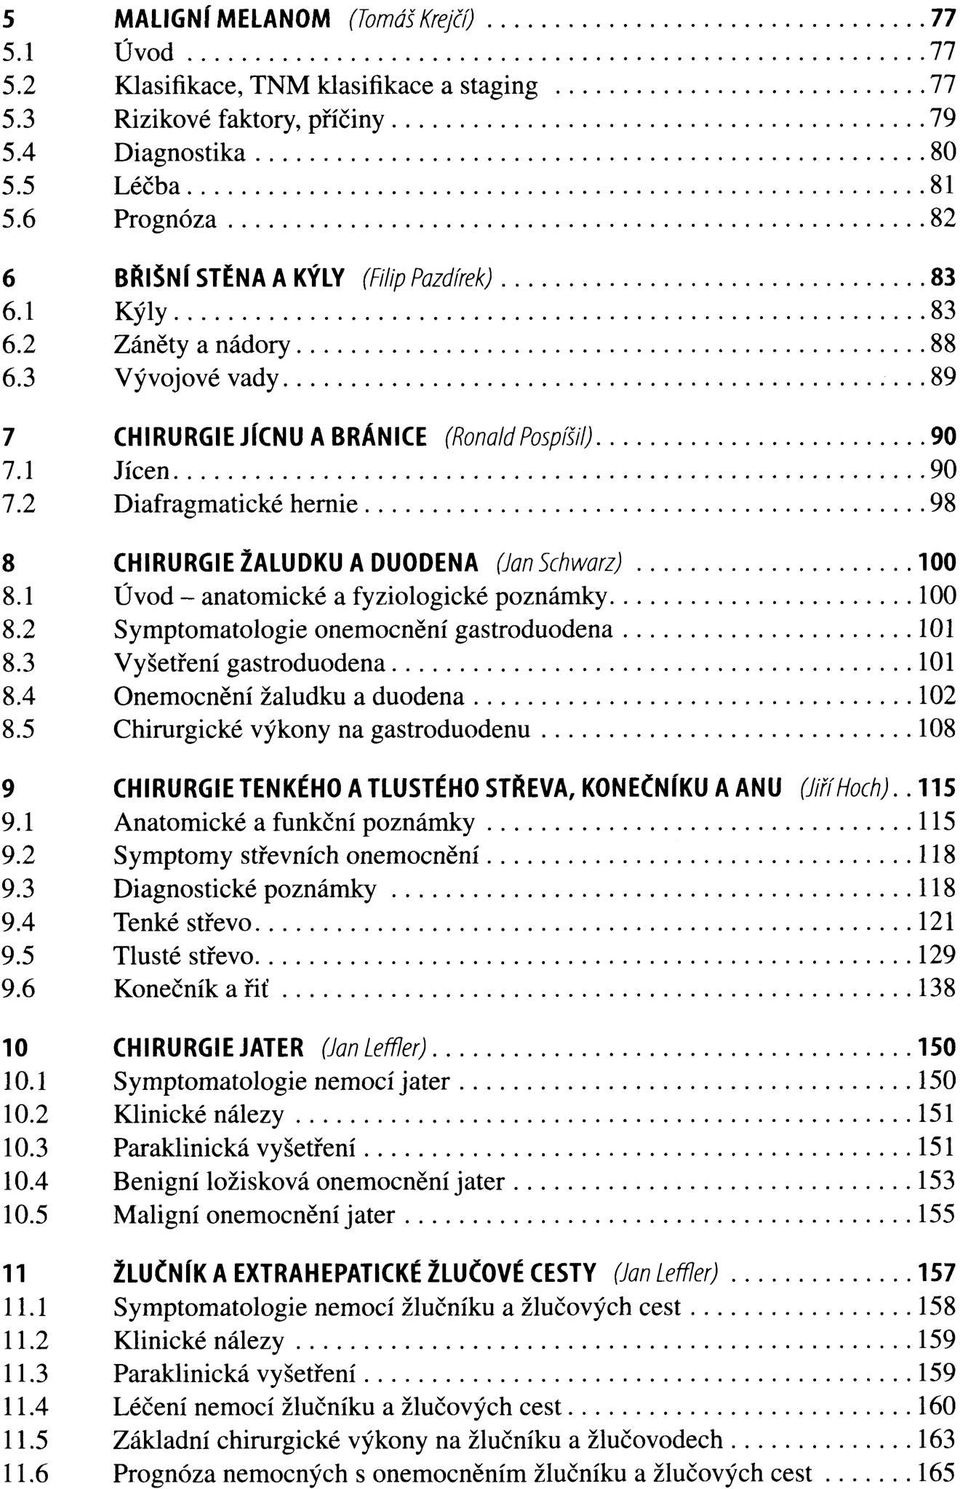 2 Diafragmatické hernie 98 8 CHIRURGIE ŽALUDKU A DUODENA (Jan Schwarz) 100 8.1 Úvod - anatomické a fyziologické poznámky 100 8.2 Symptomatologie onemocnění gastroduodena 101 8.